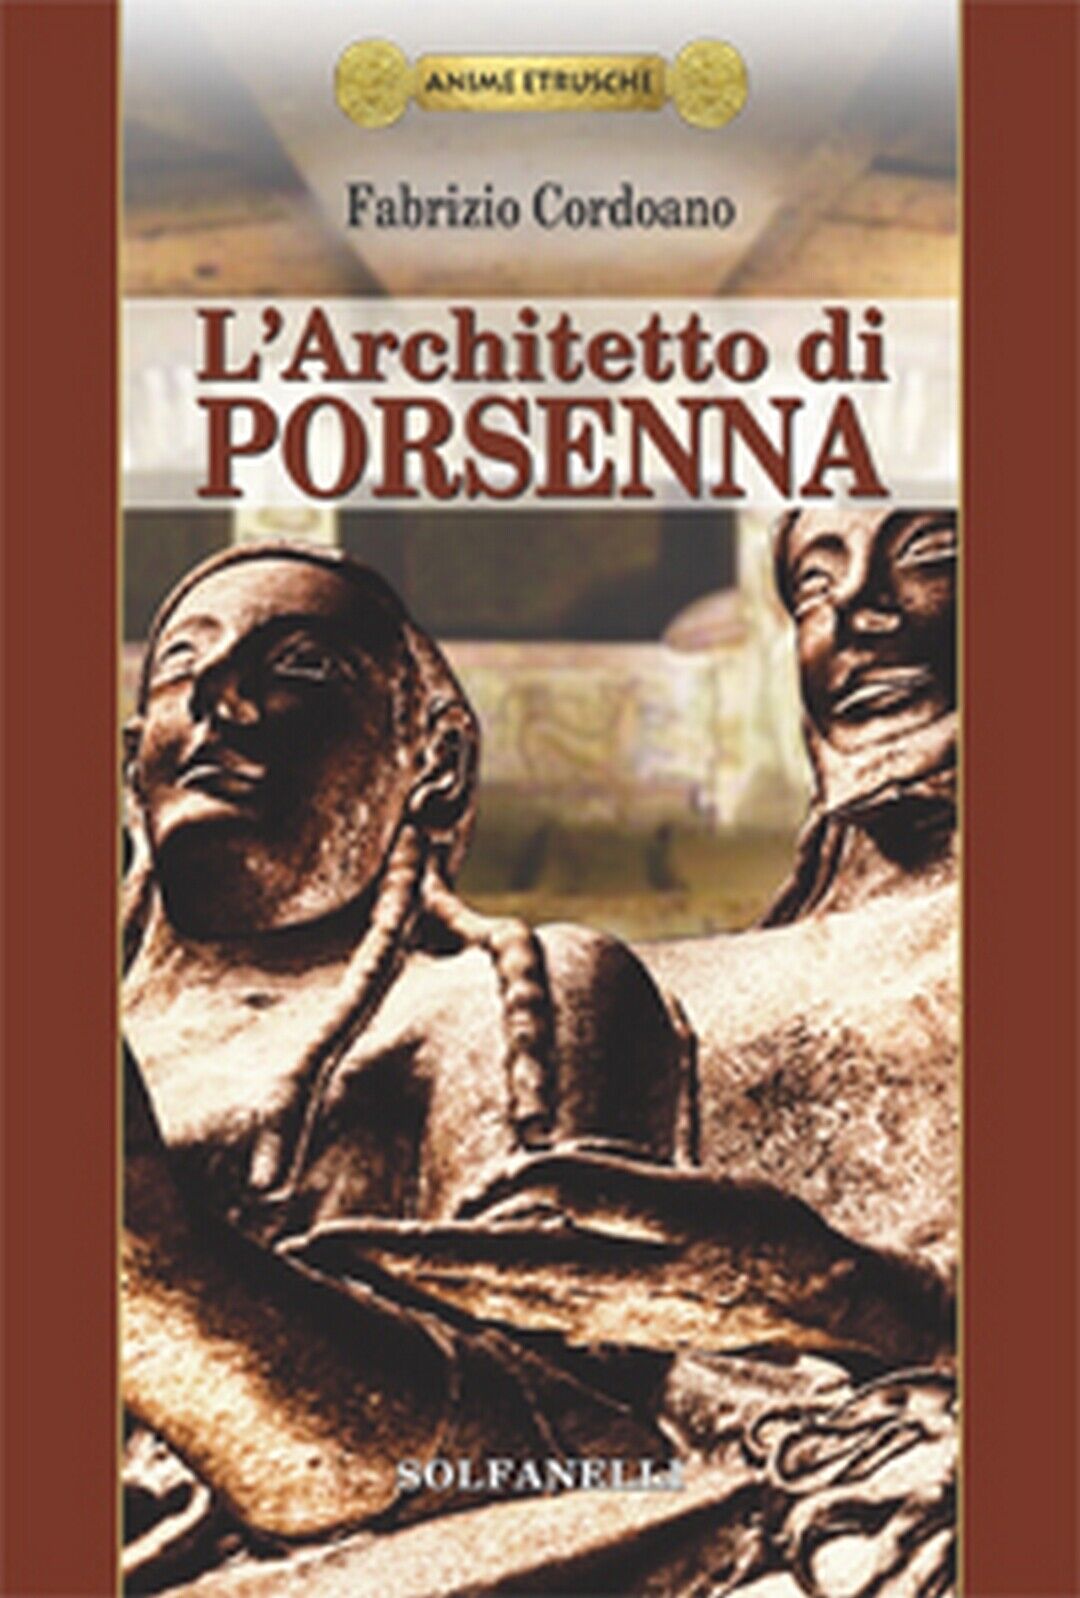 Anime Etrusche L'ARCHITETTO DI PORSENNA  di Fabrizio Cordoano,  Solfanelli Ediz. libro usato